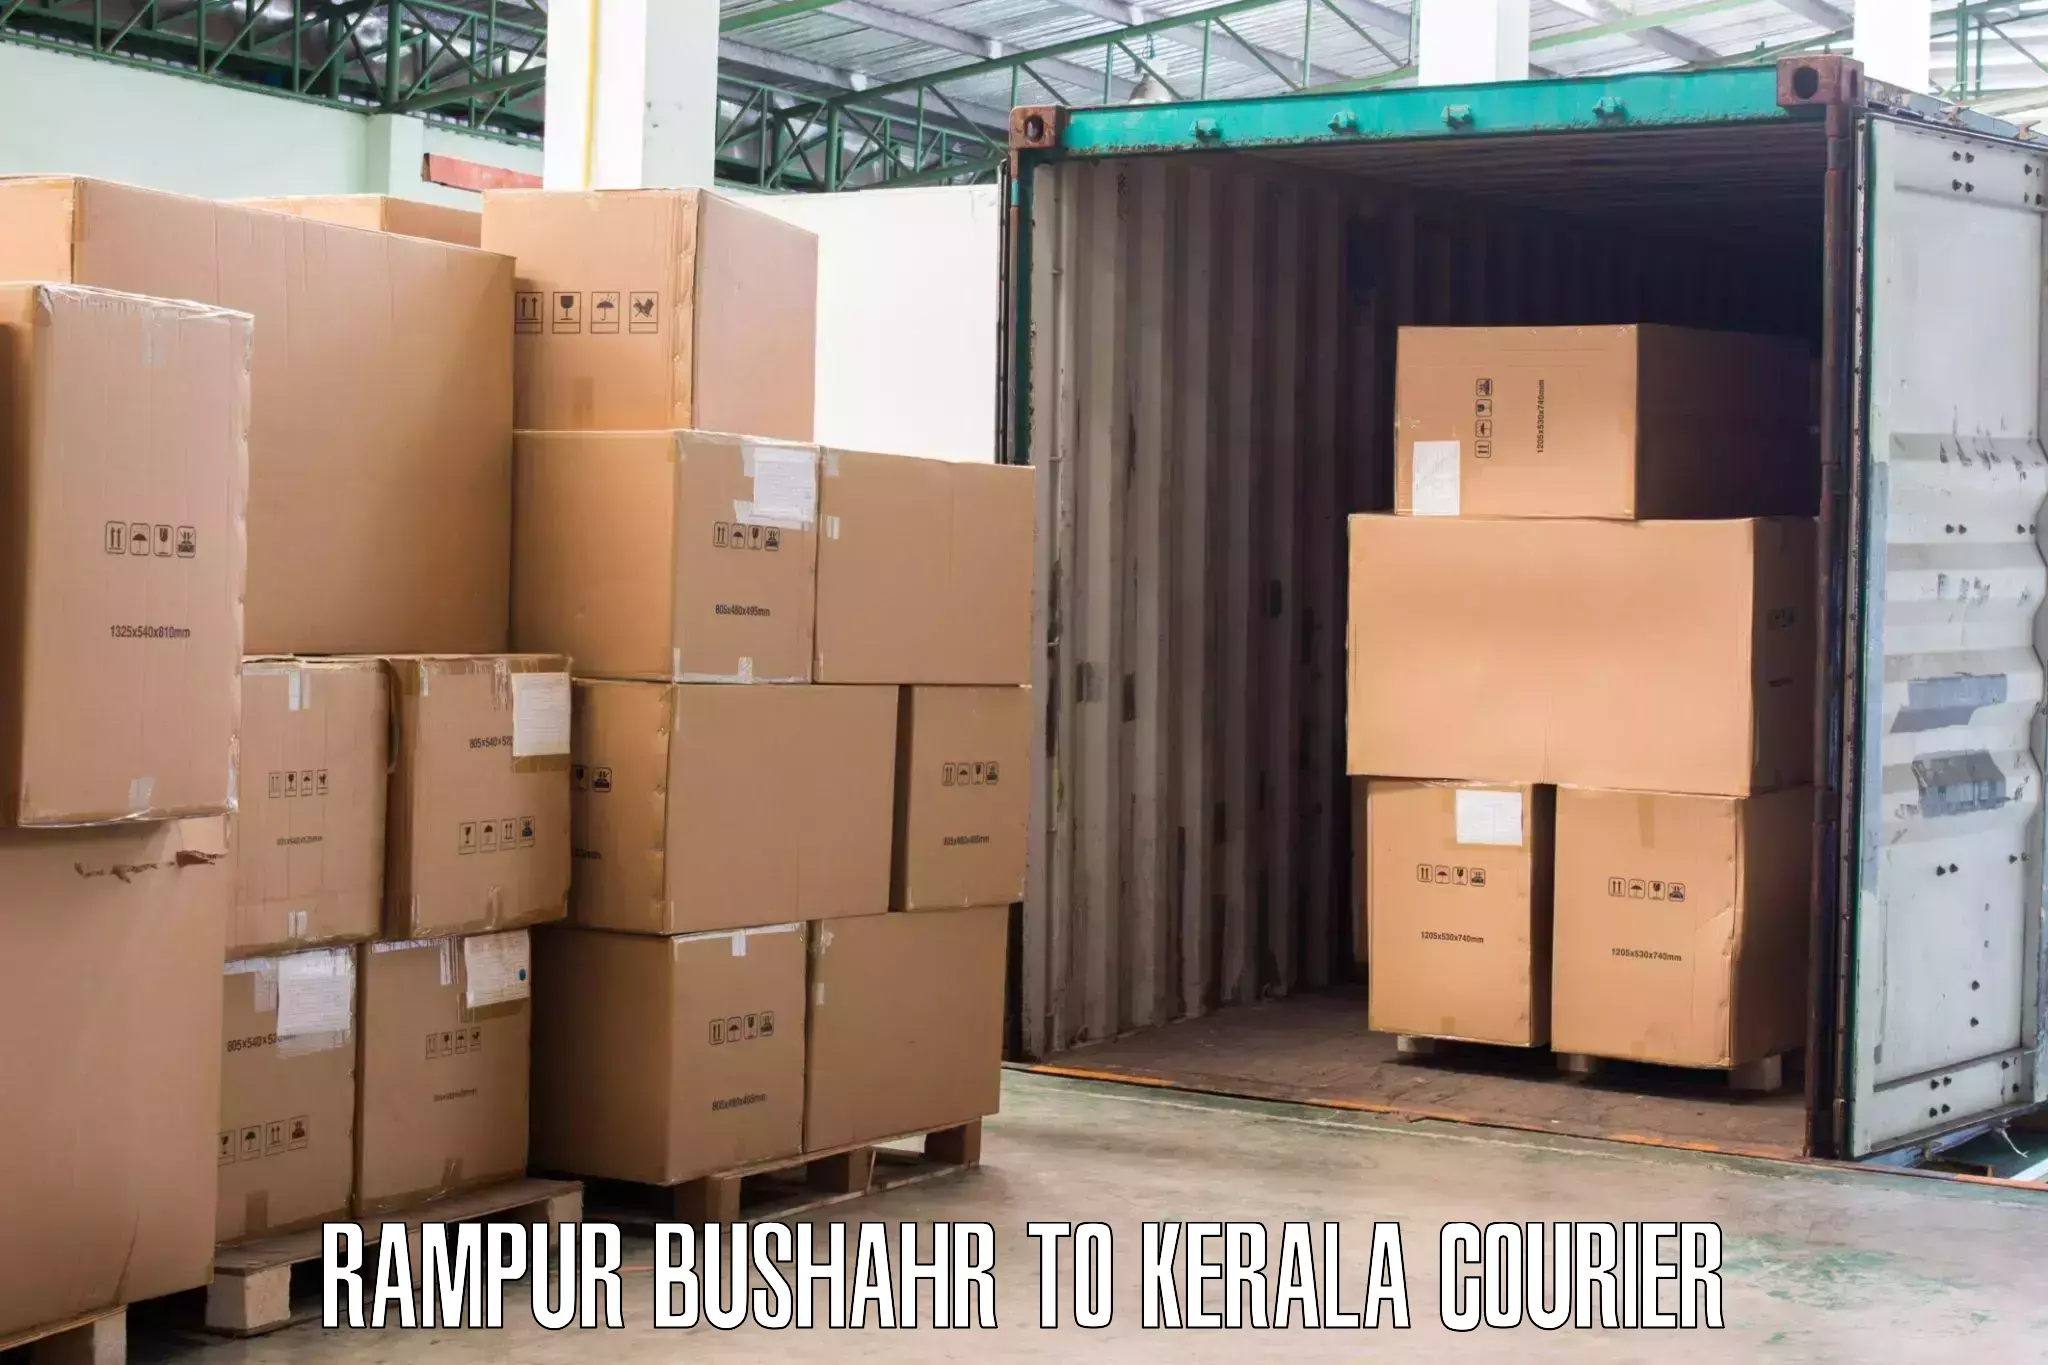 Professional home movers Rampur Bushahr to Thiruvananthapuram